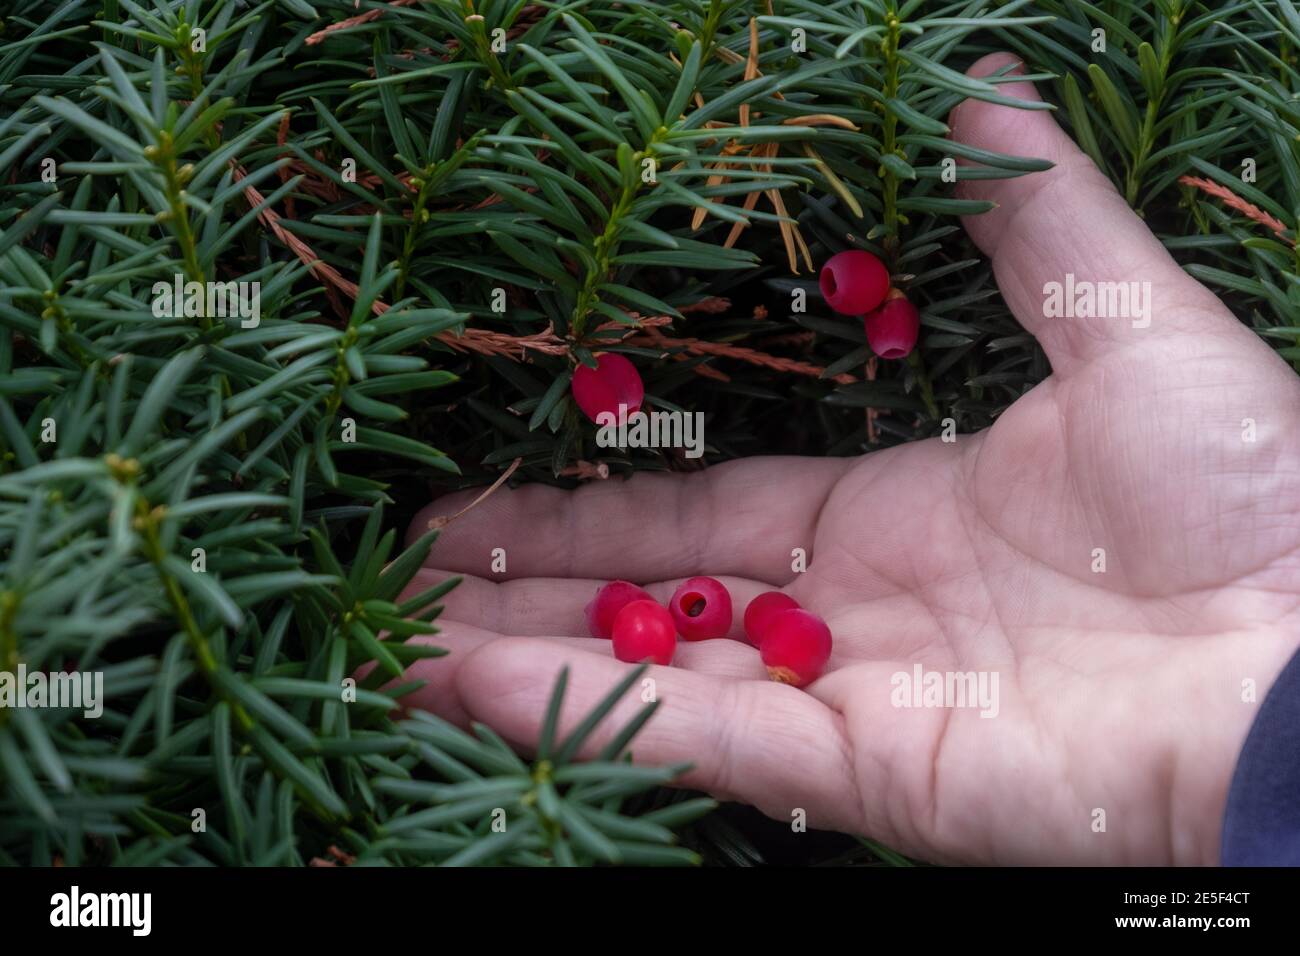 Hand of the gardener holds ripe berries of evergreen evergreen yew Stock Photo